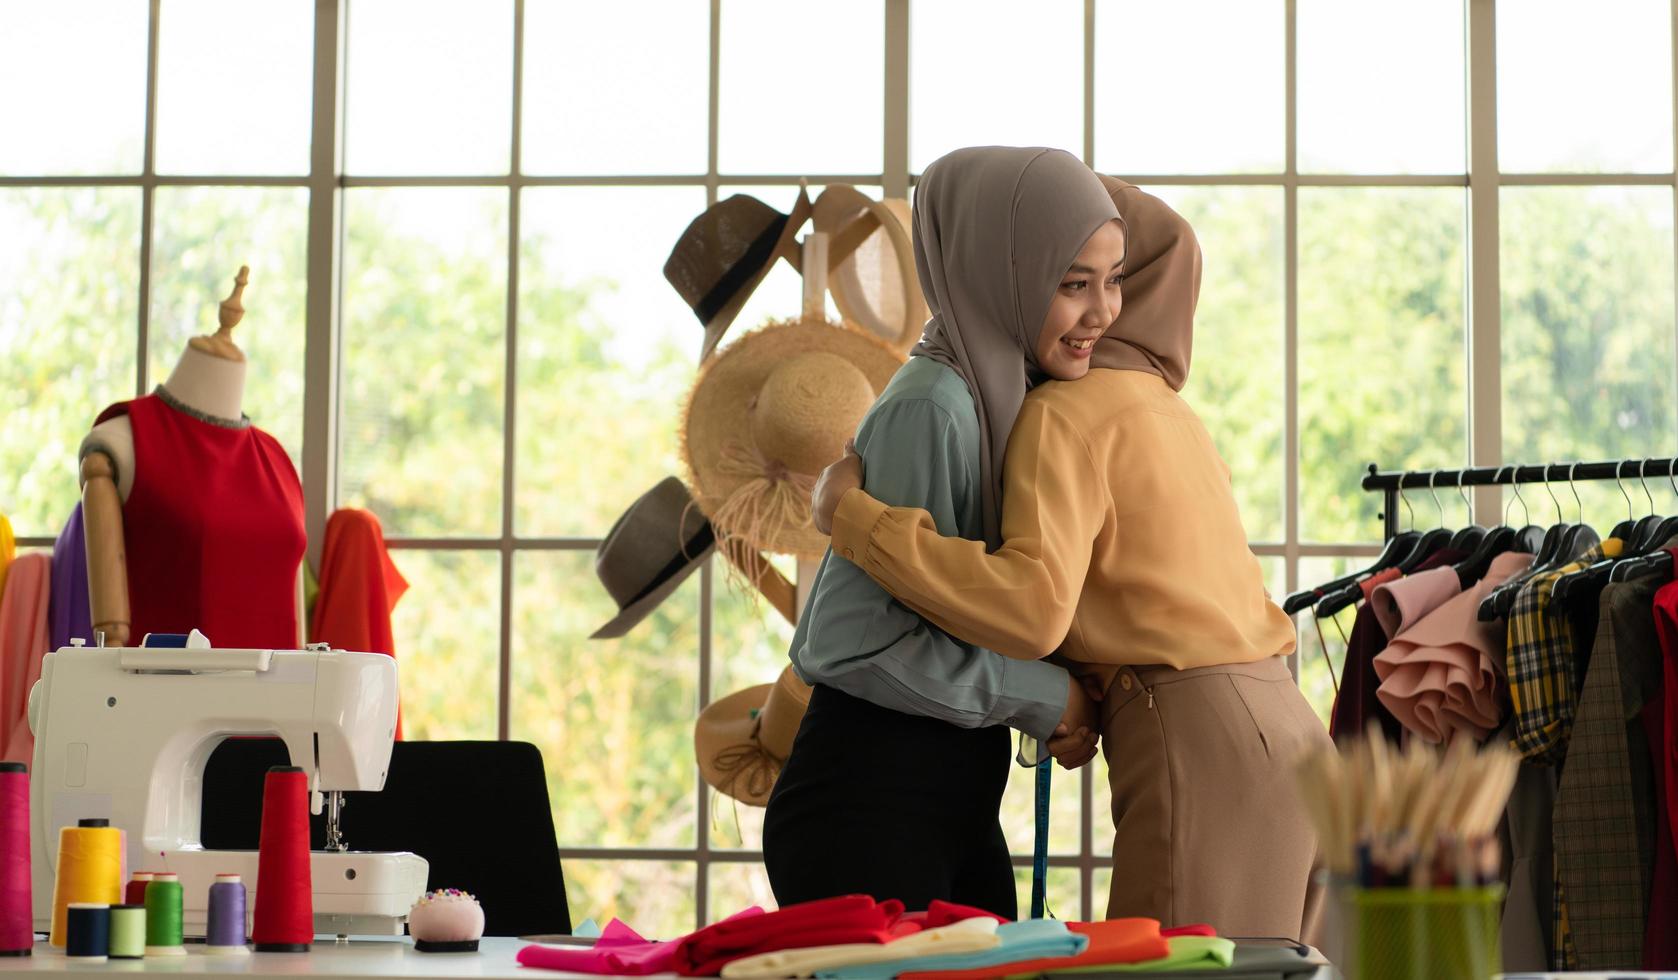 båda muslimska kvinnorna driver ett litet företag i sina egna hem. är design och skräddarsydda kläder. foto